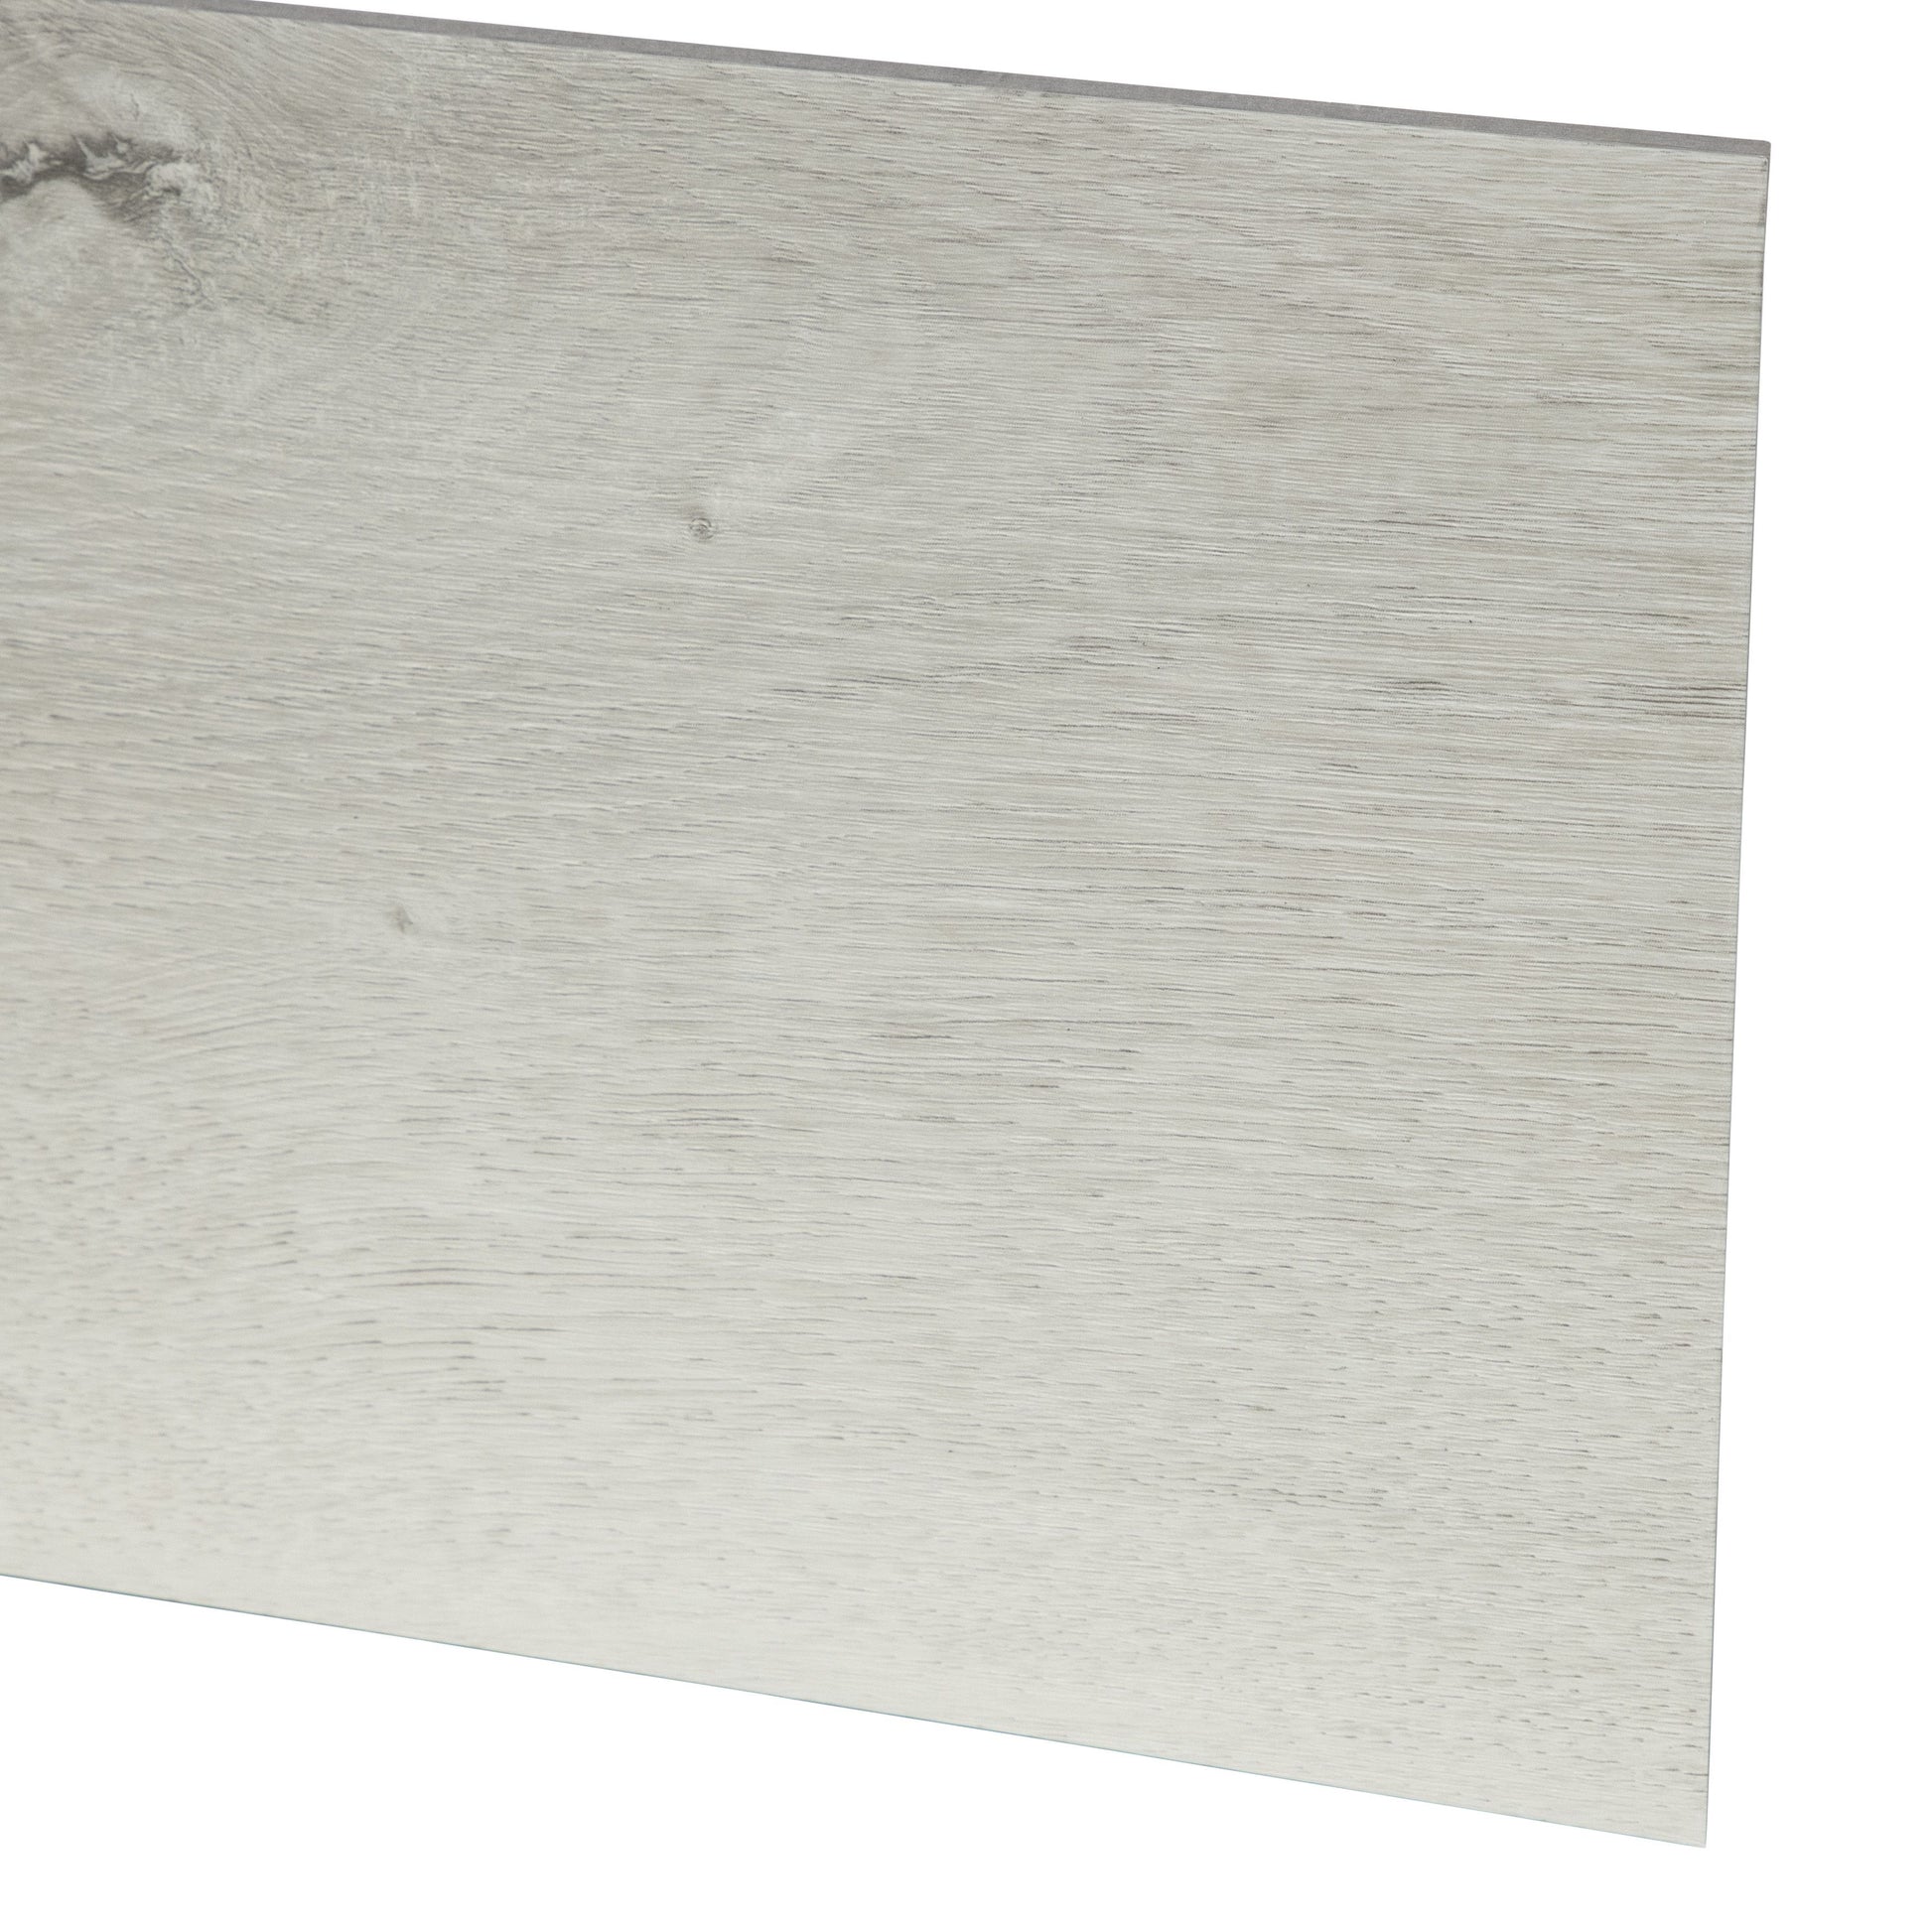 Leccio White Click Lock SPC Luxury Vinyl Flooring 7.2x48" - Industry Tile